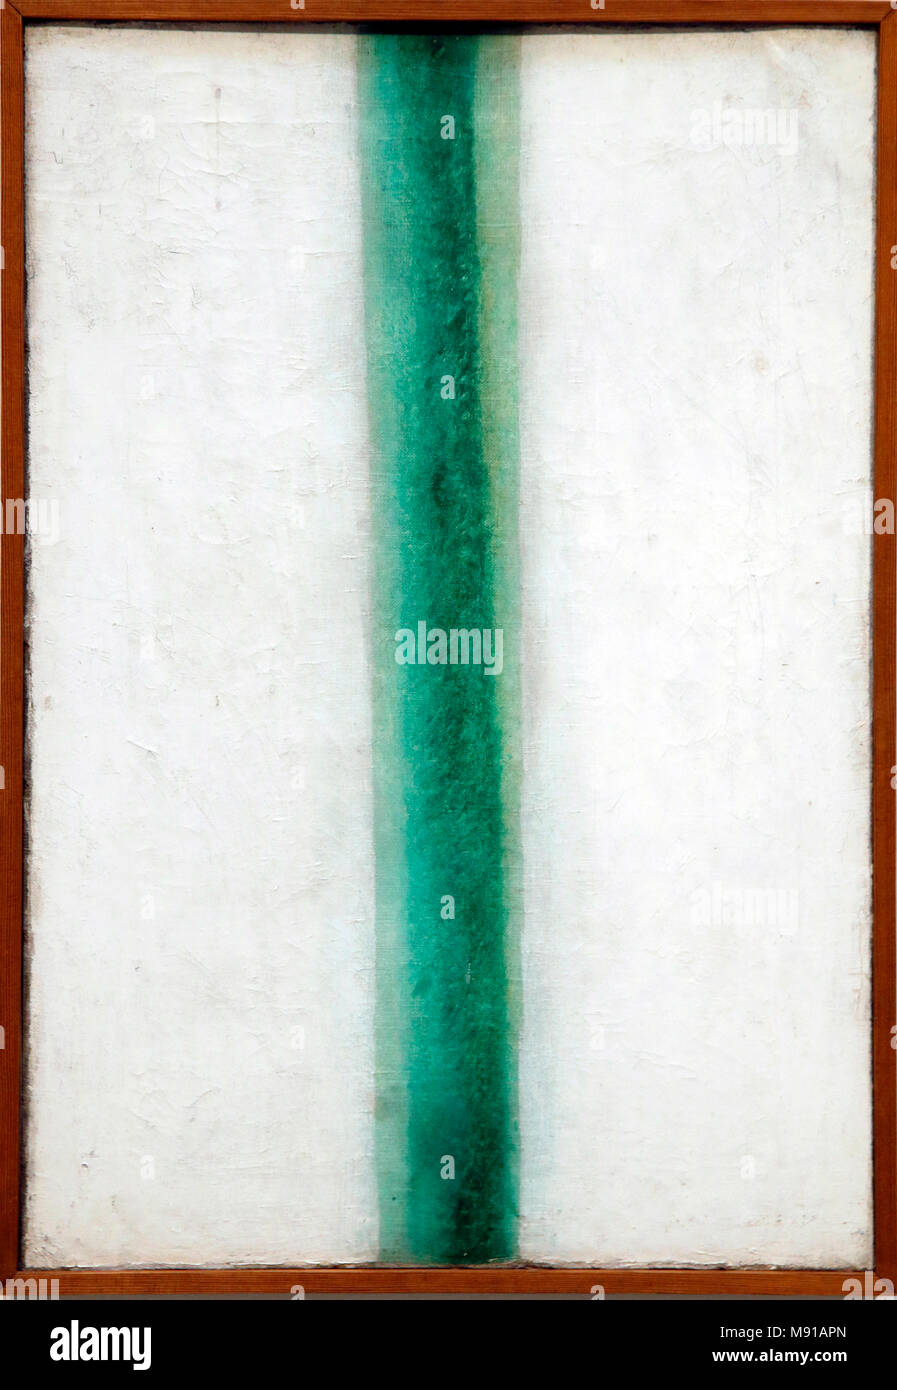 Olga Rozanova, bande verte (peinture couleurs), 1917, huile sur toile, musée d'état du Kremlin, Rostov. Une balle pendant qu'exposées à Paris, France. Banque D'Images